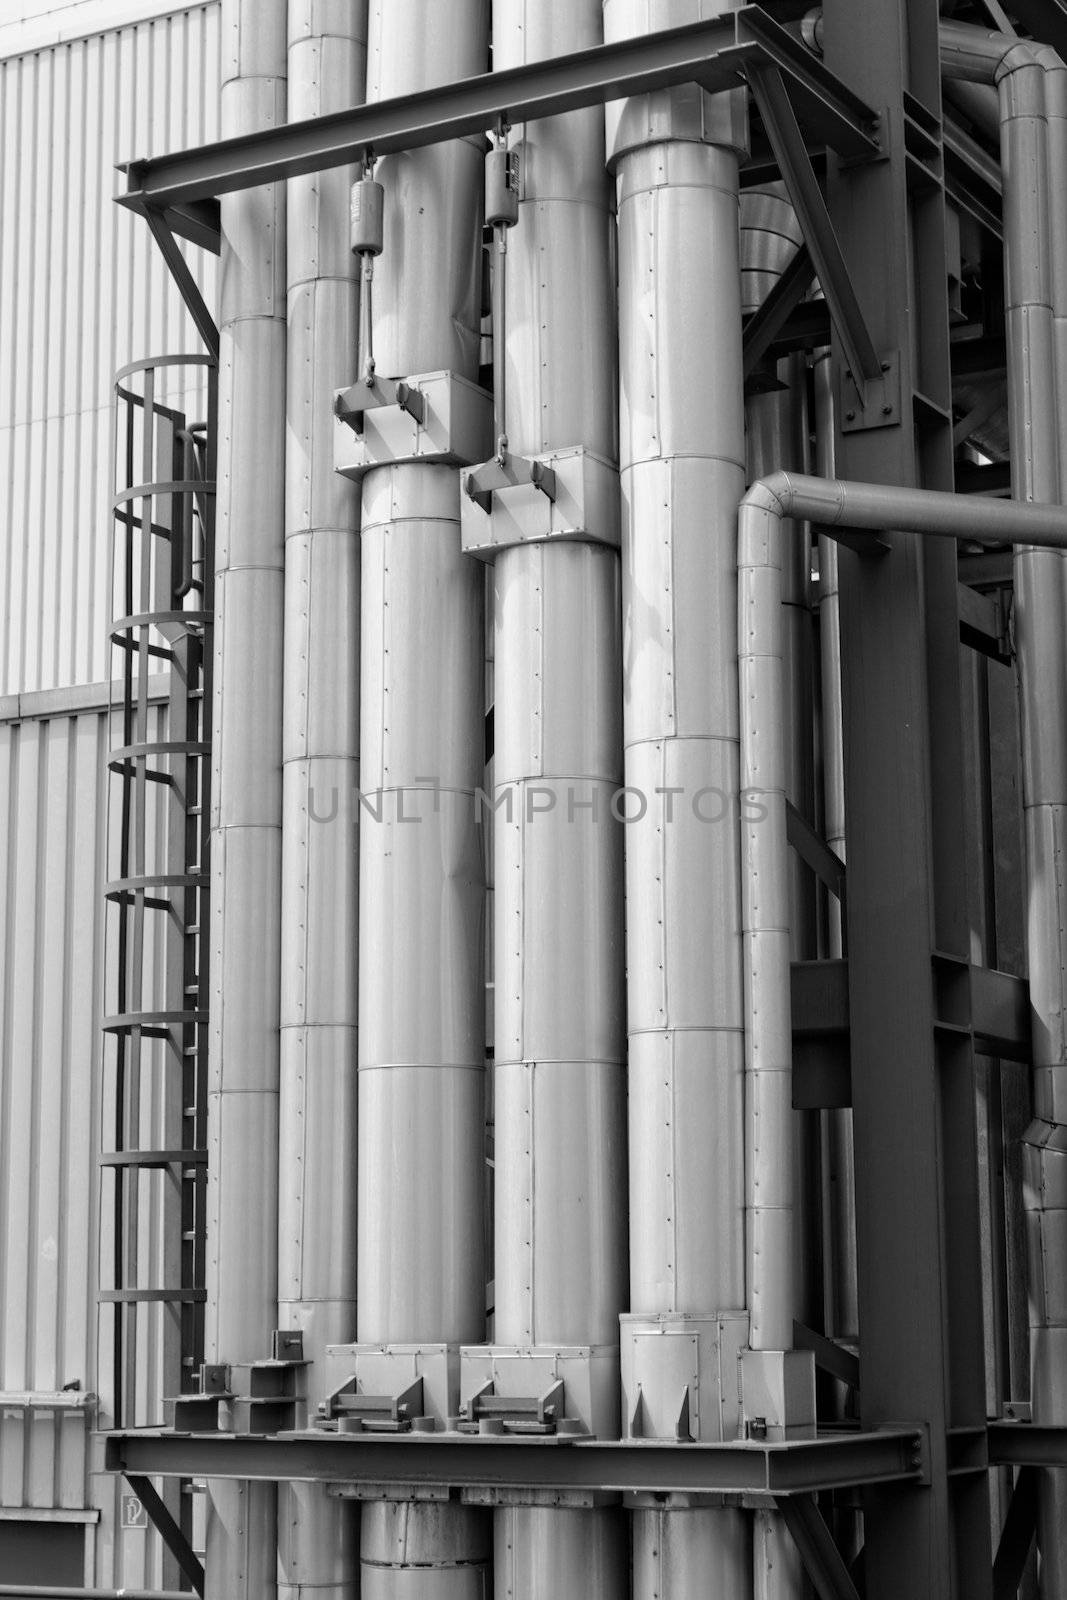 inustrial pipes by NagyDodo